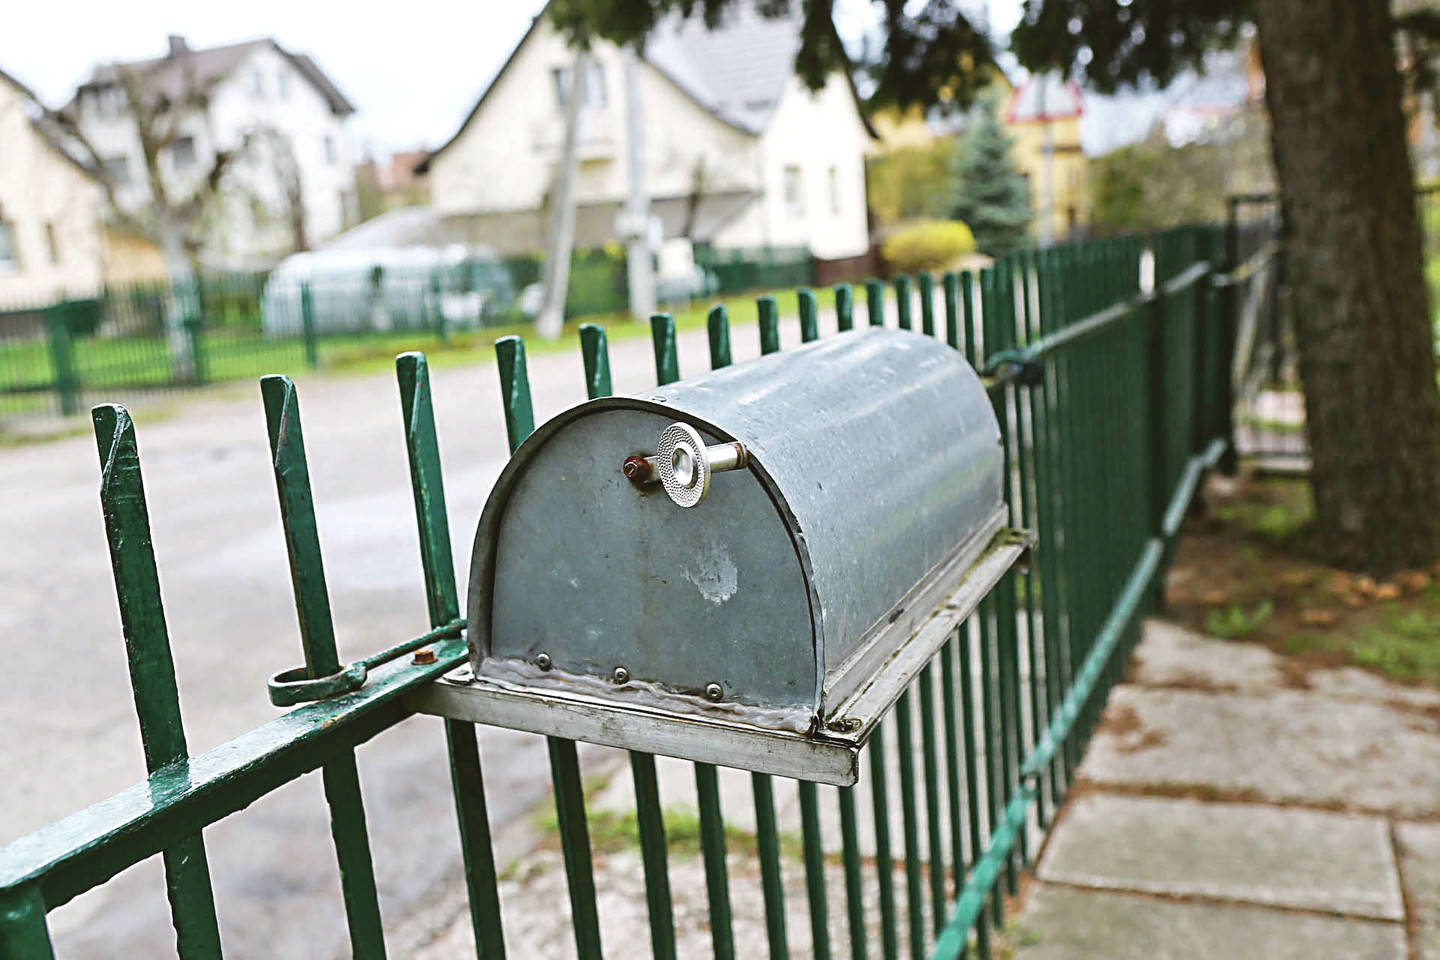 Voveraičių gatvės gyventojai naudojasi pailgomis iš skardos pagamintomis pašto dėžutėmis su lenktais stogais ir priekyje įtaisytomis durimis.<br>G.Bitvinsko nuotr.